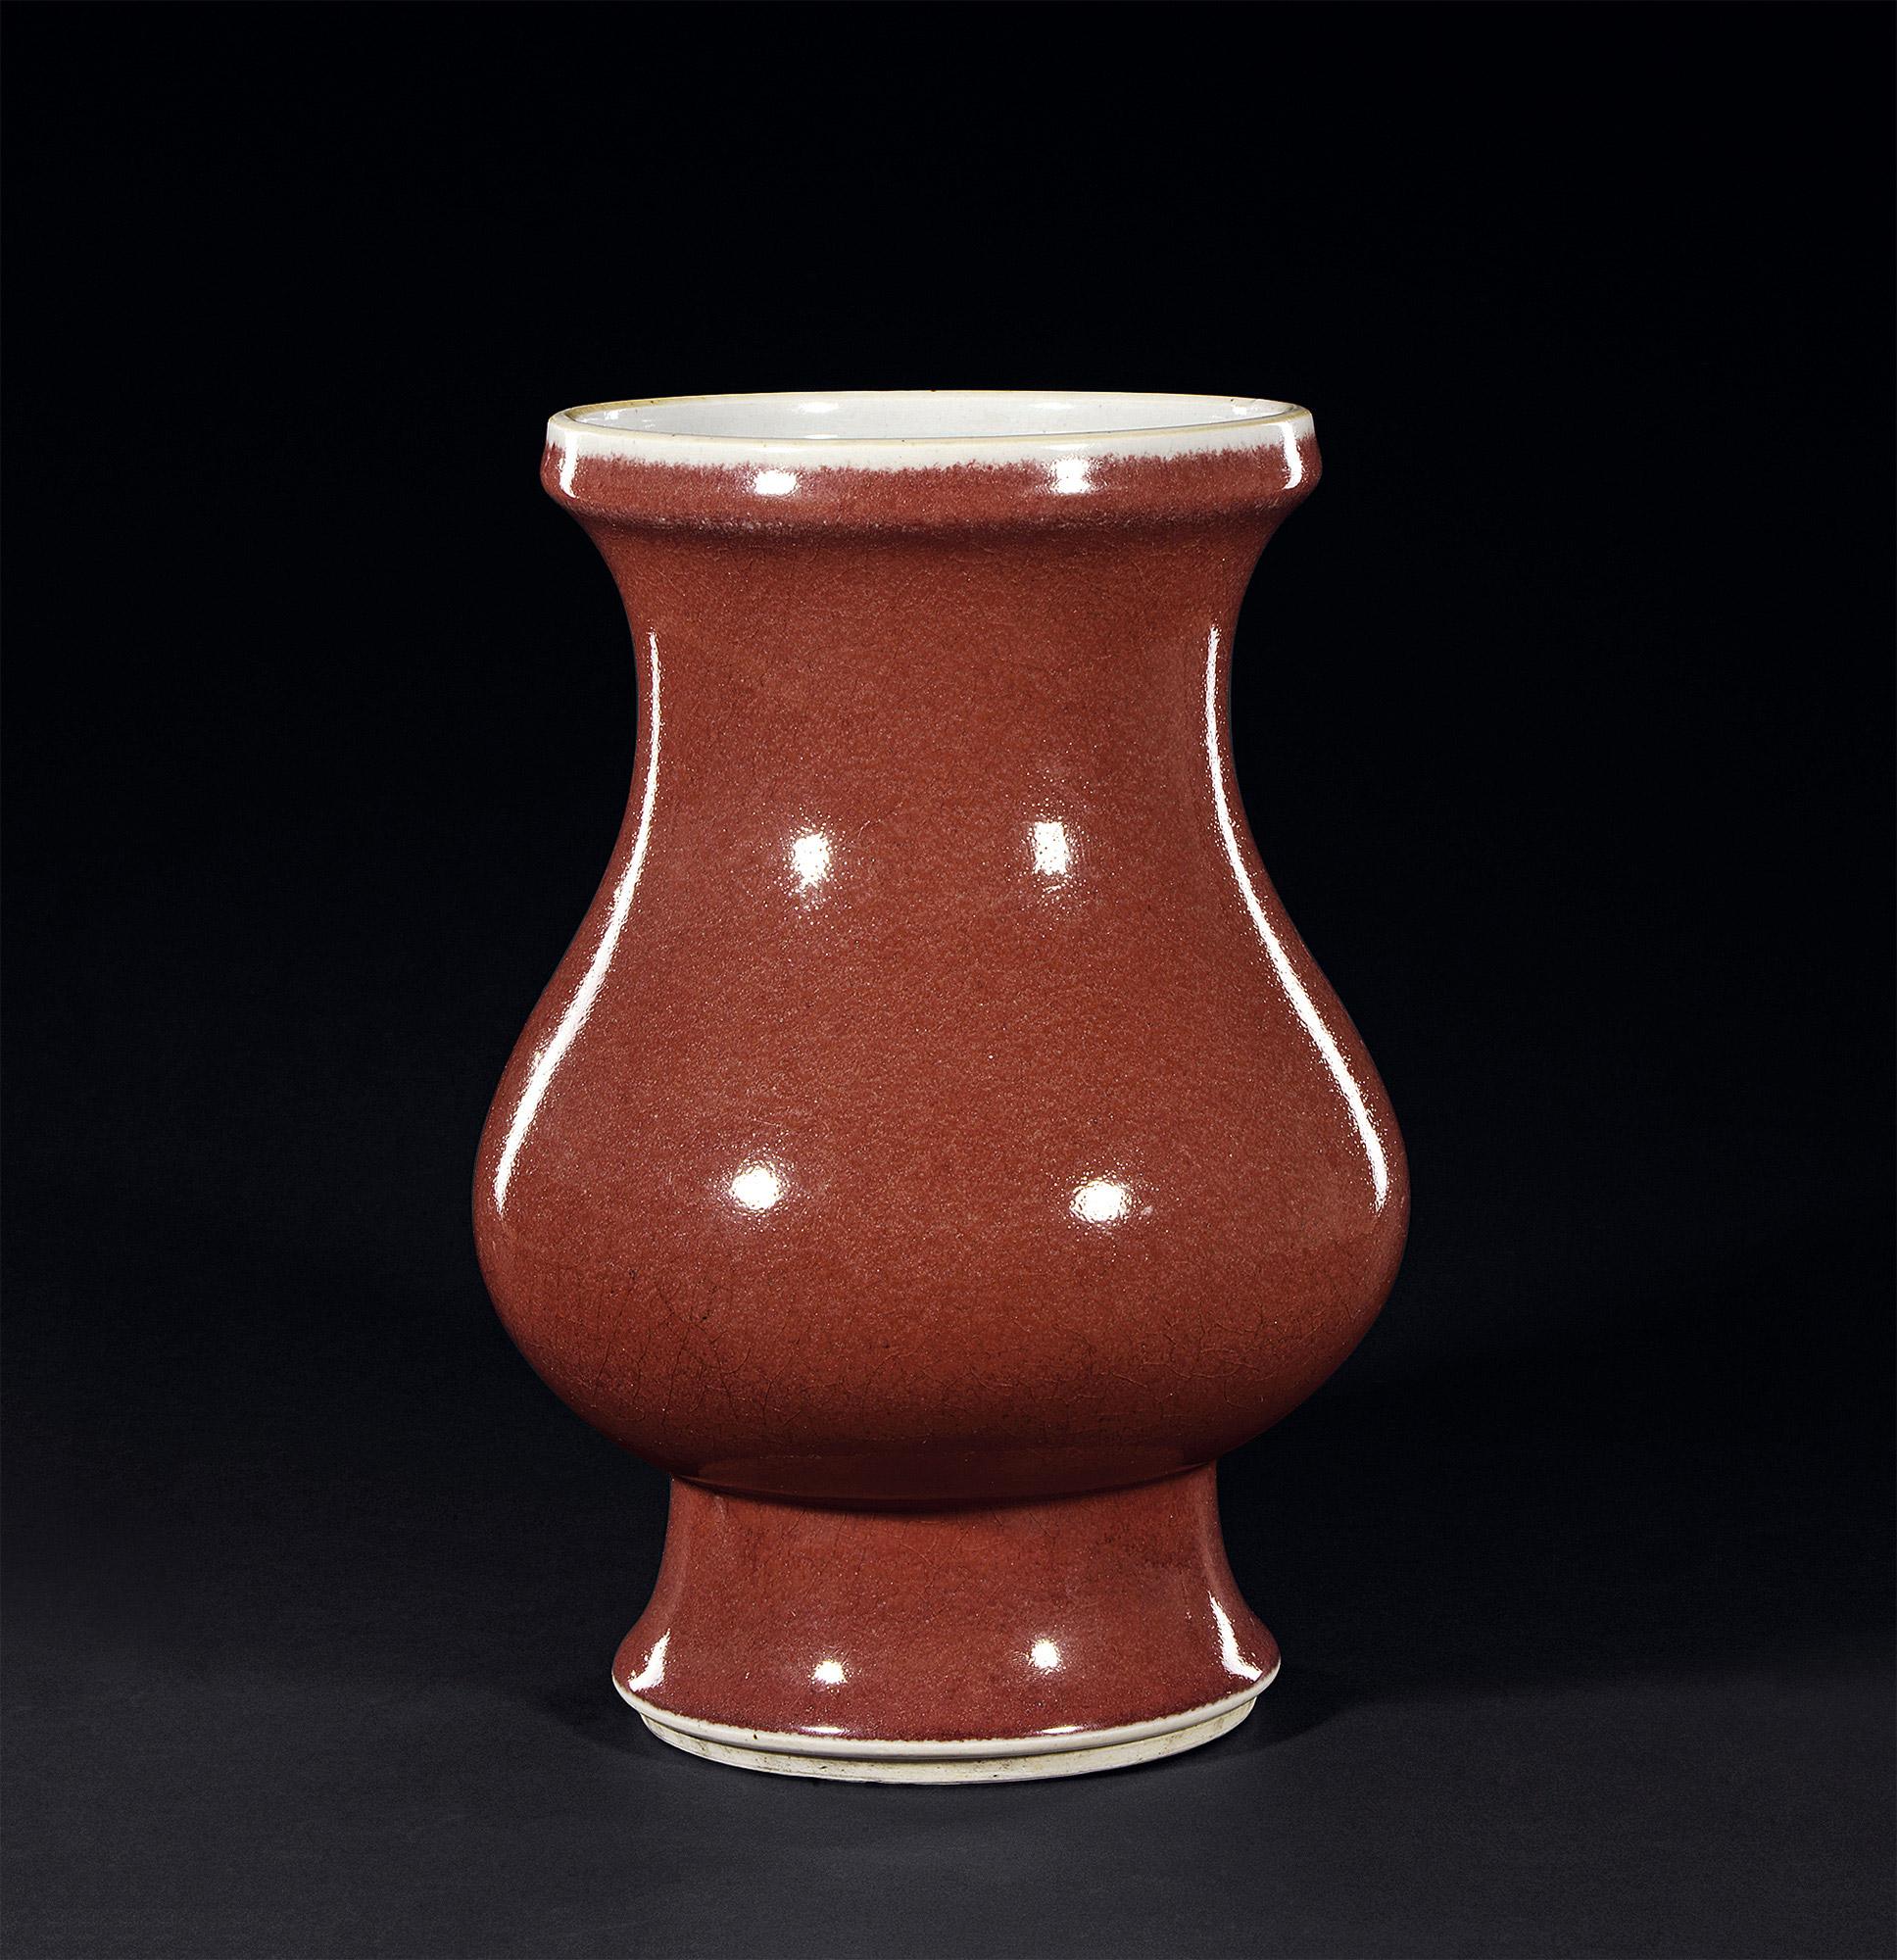 康熙祭红釉瓷器的特征图片